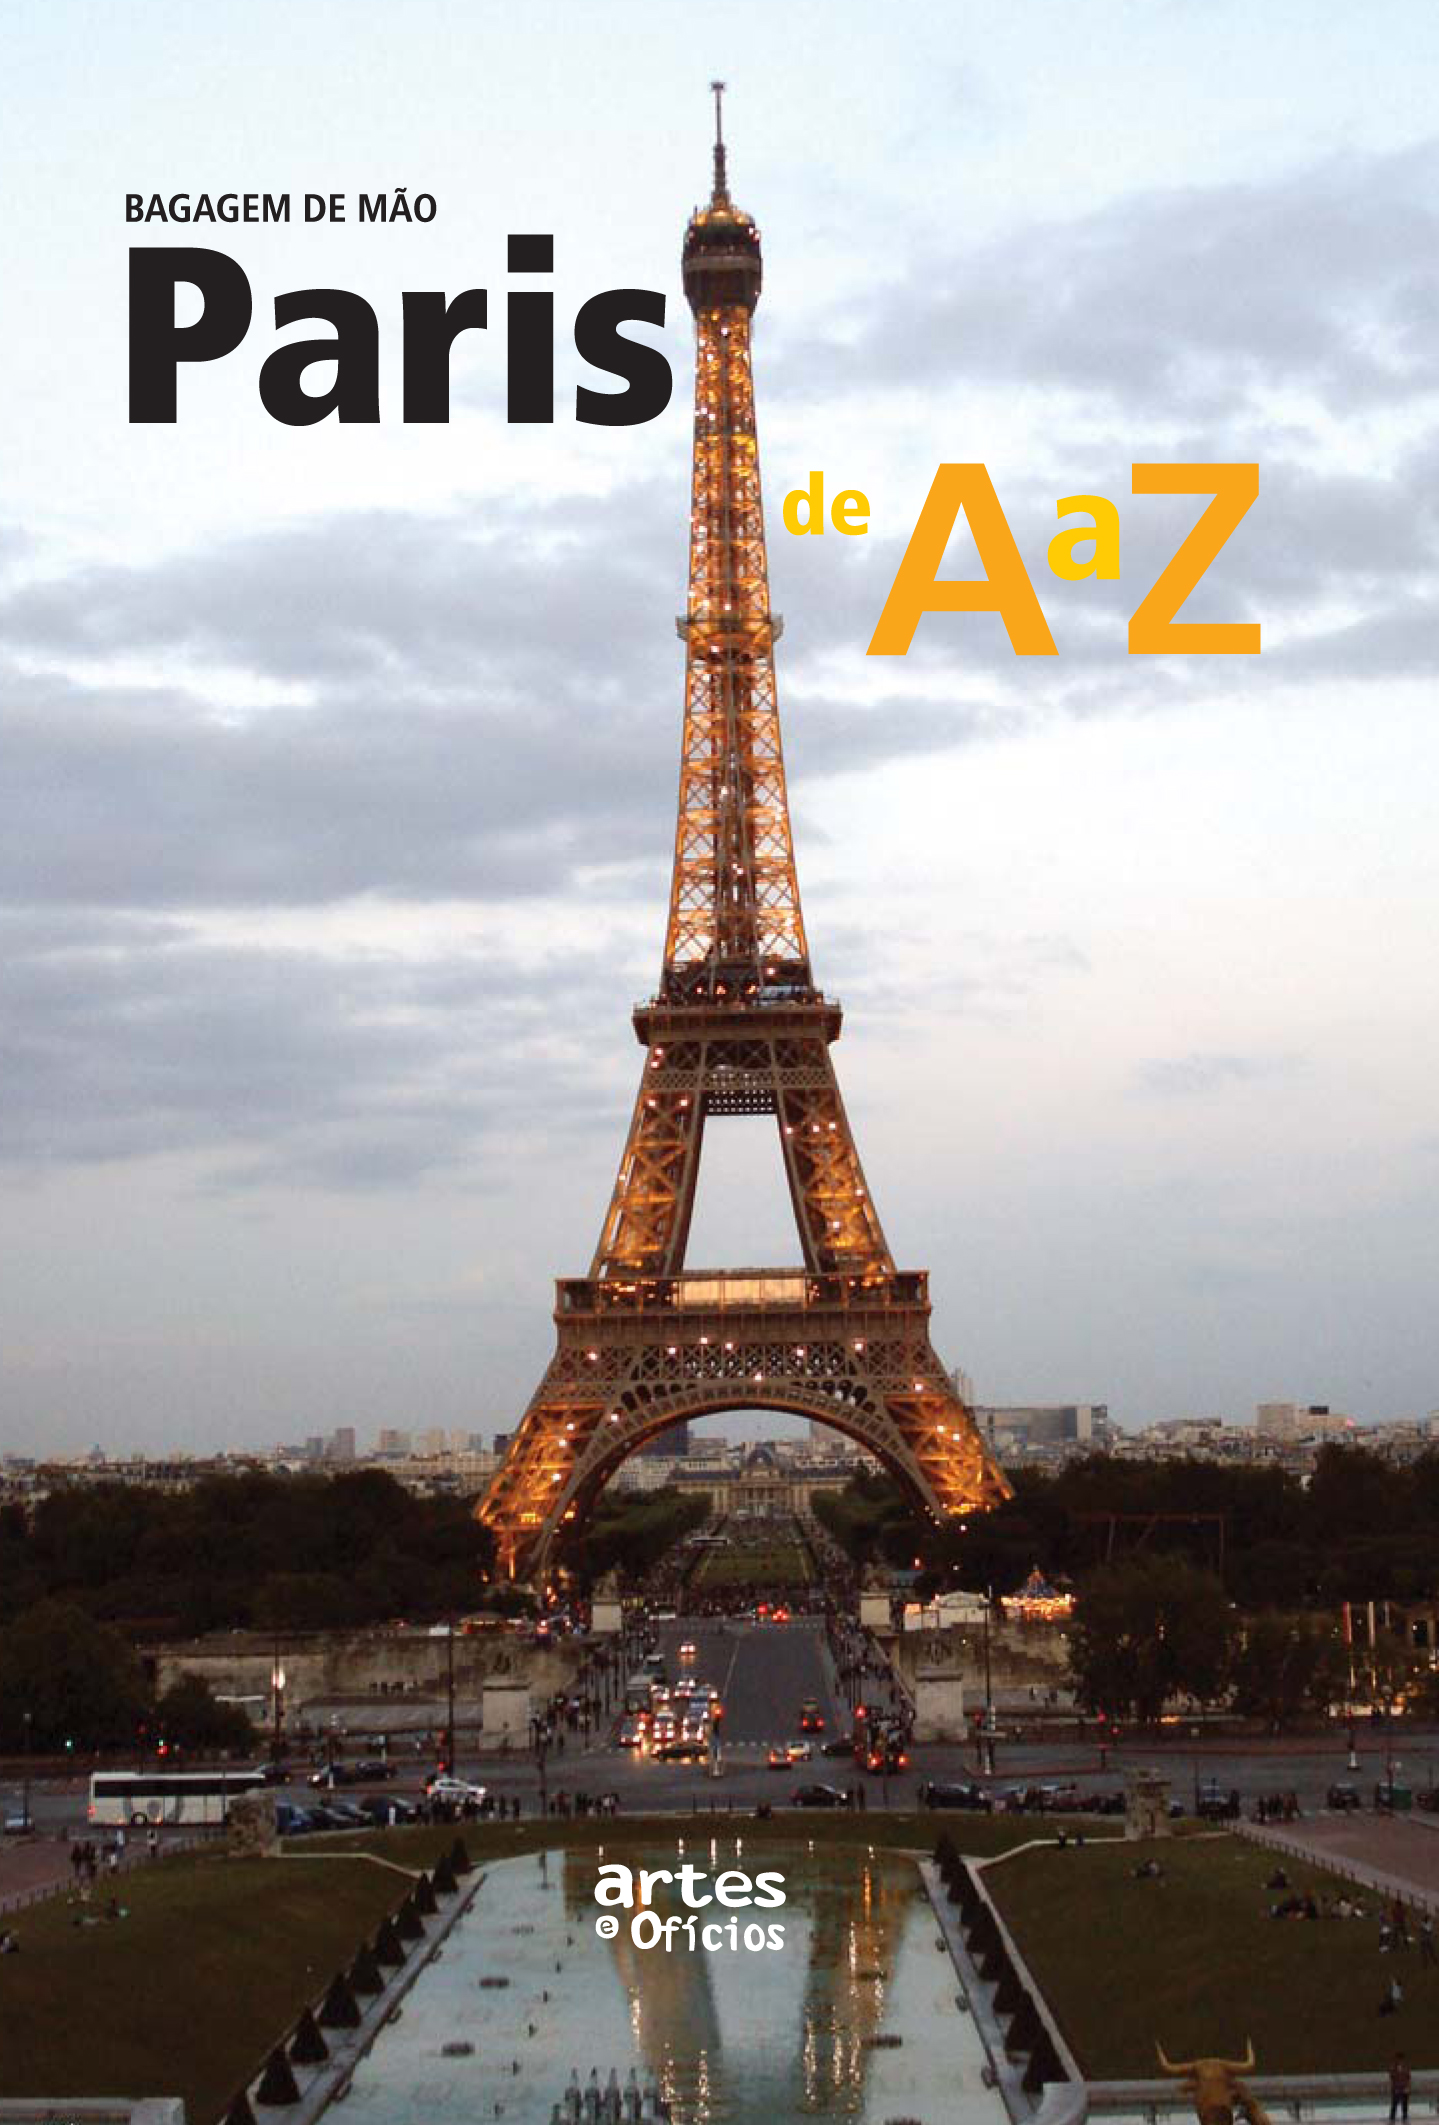 Paris de A a Z